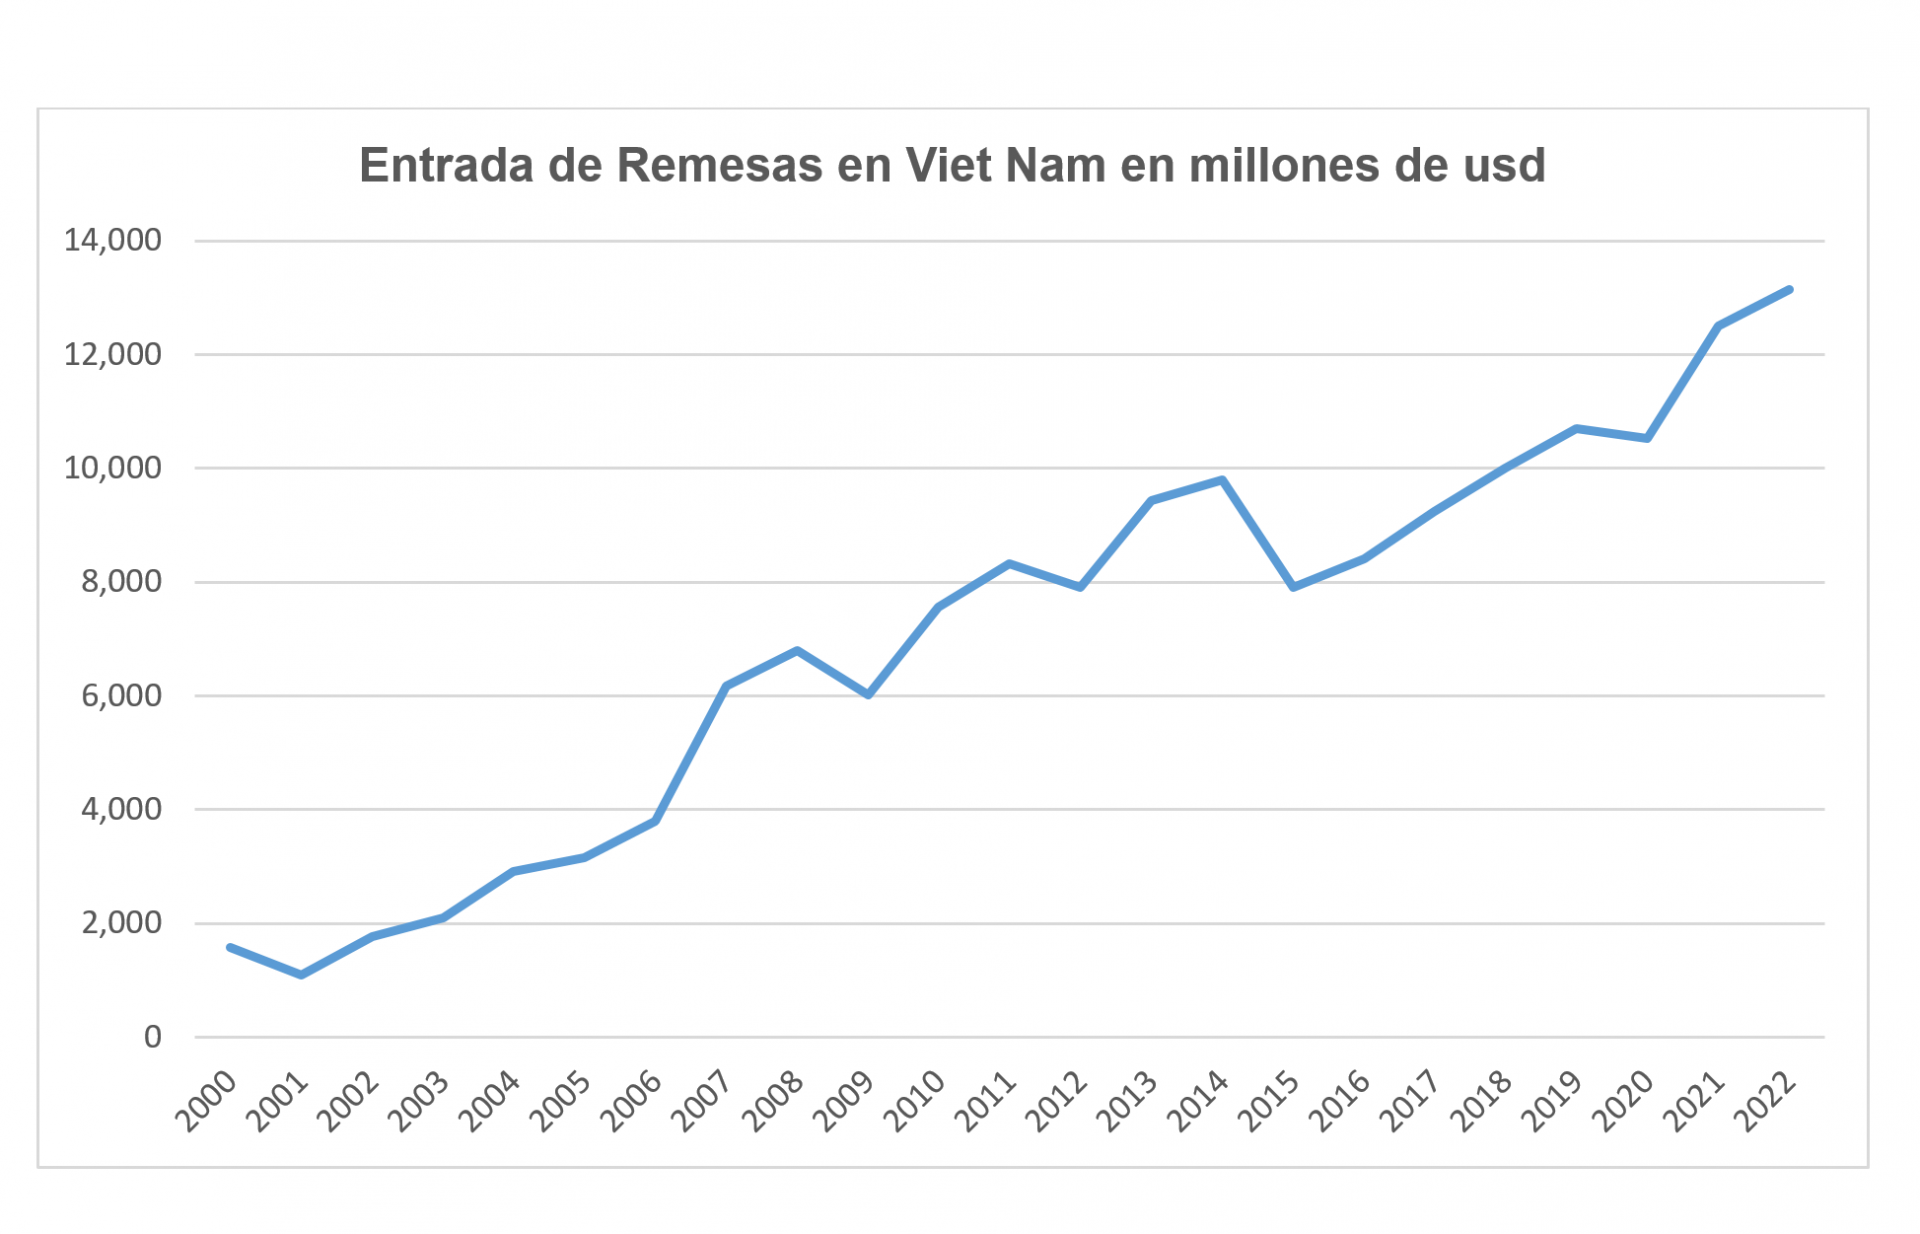 demuestra la entrada de remesas en Viet Nam entre los años 2000 a 2022